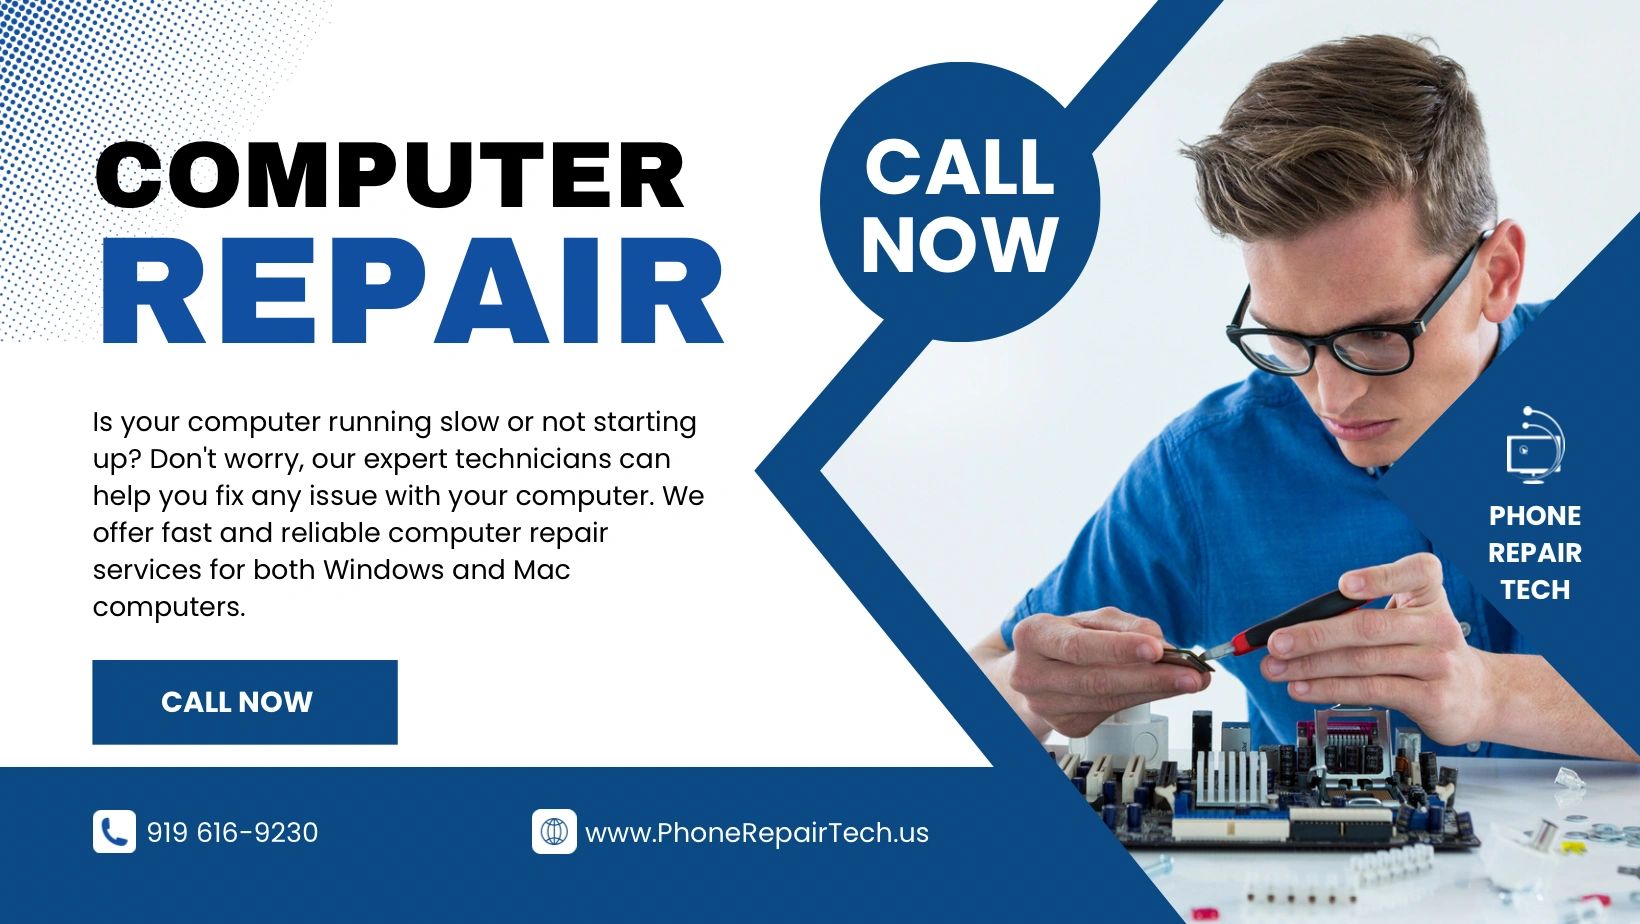 (c) Phonerepairtech.us